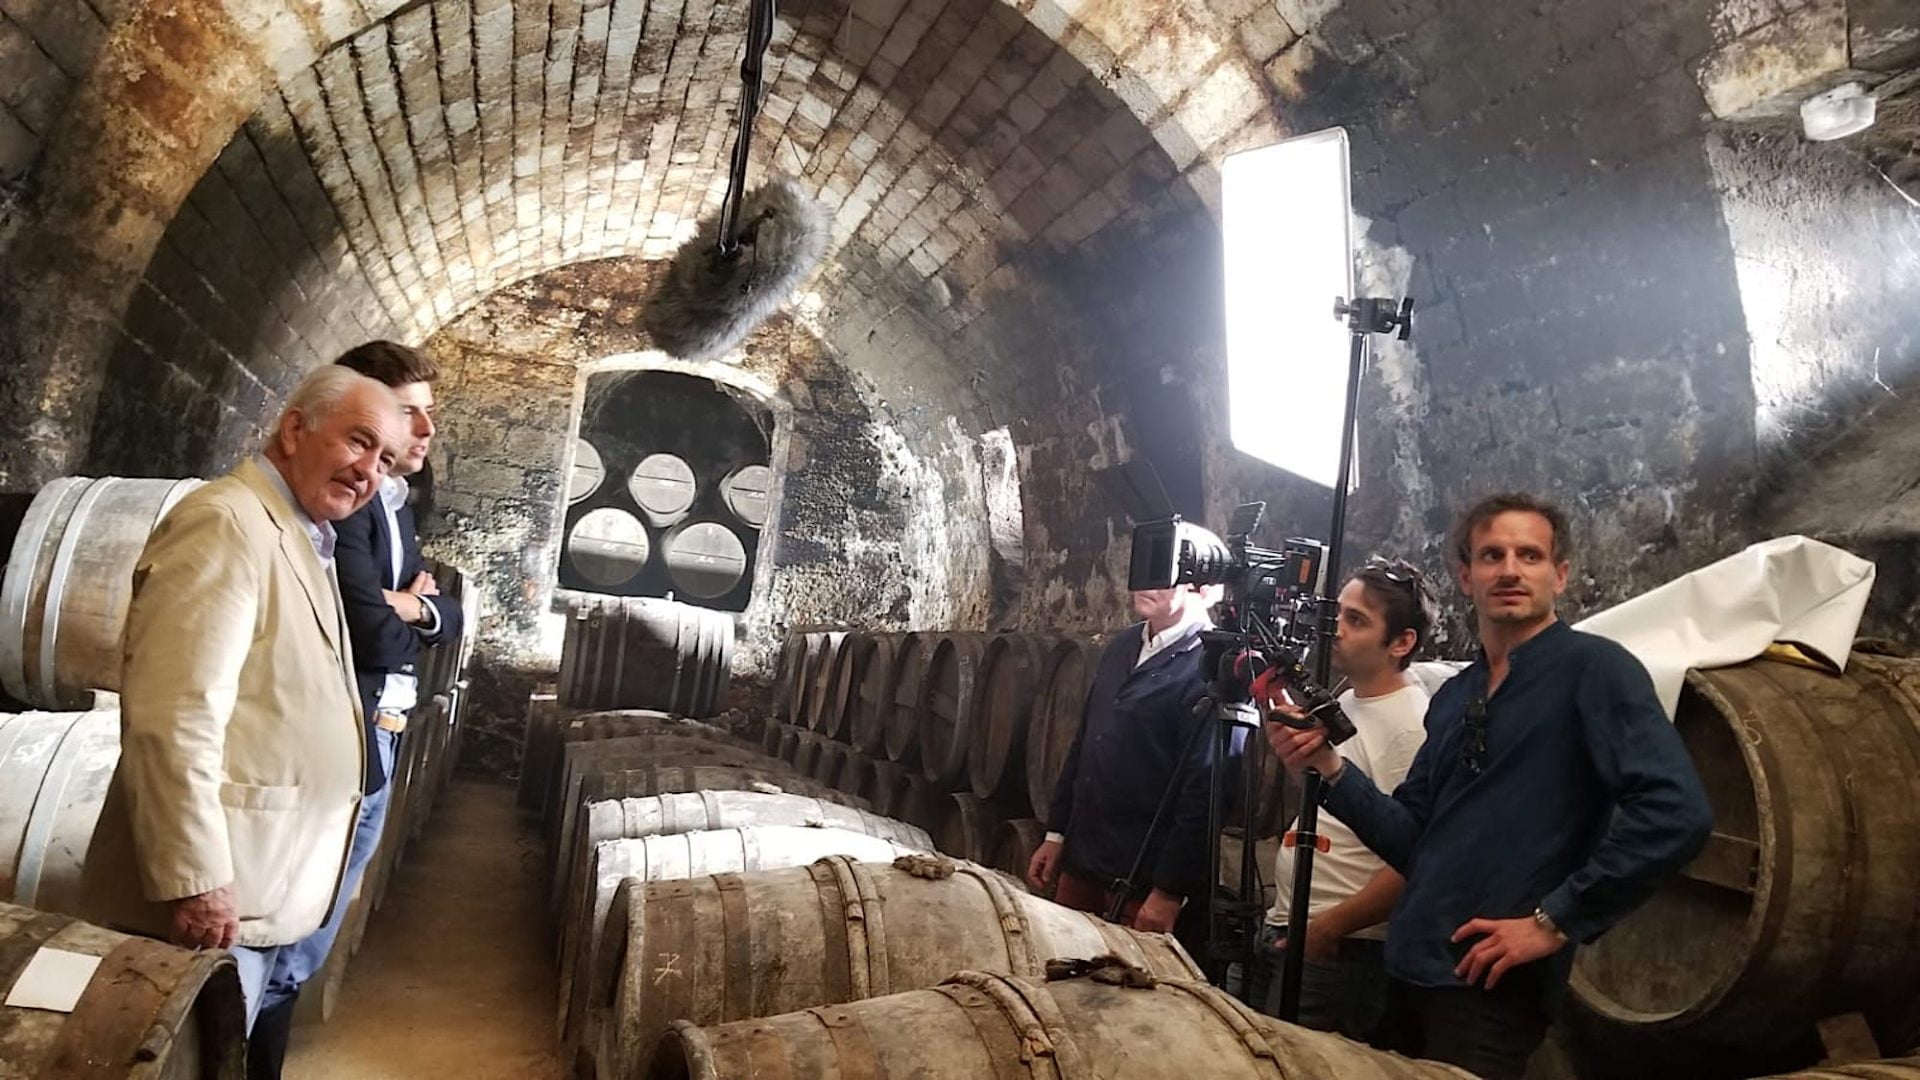 tournage dune video dans un cave de vin par winetv